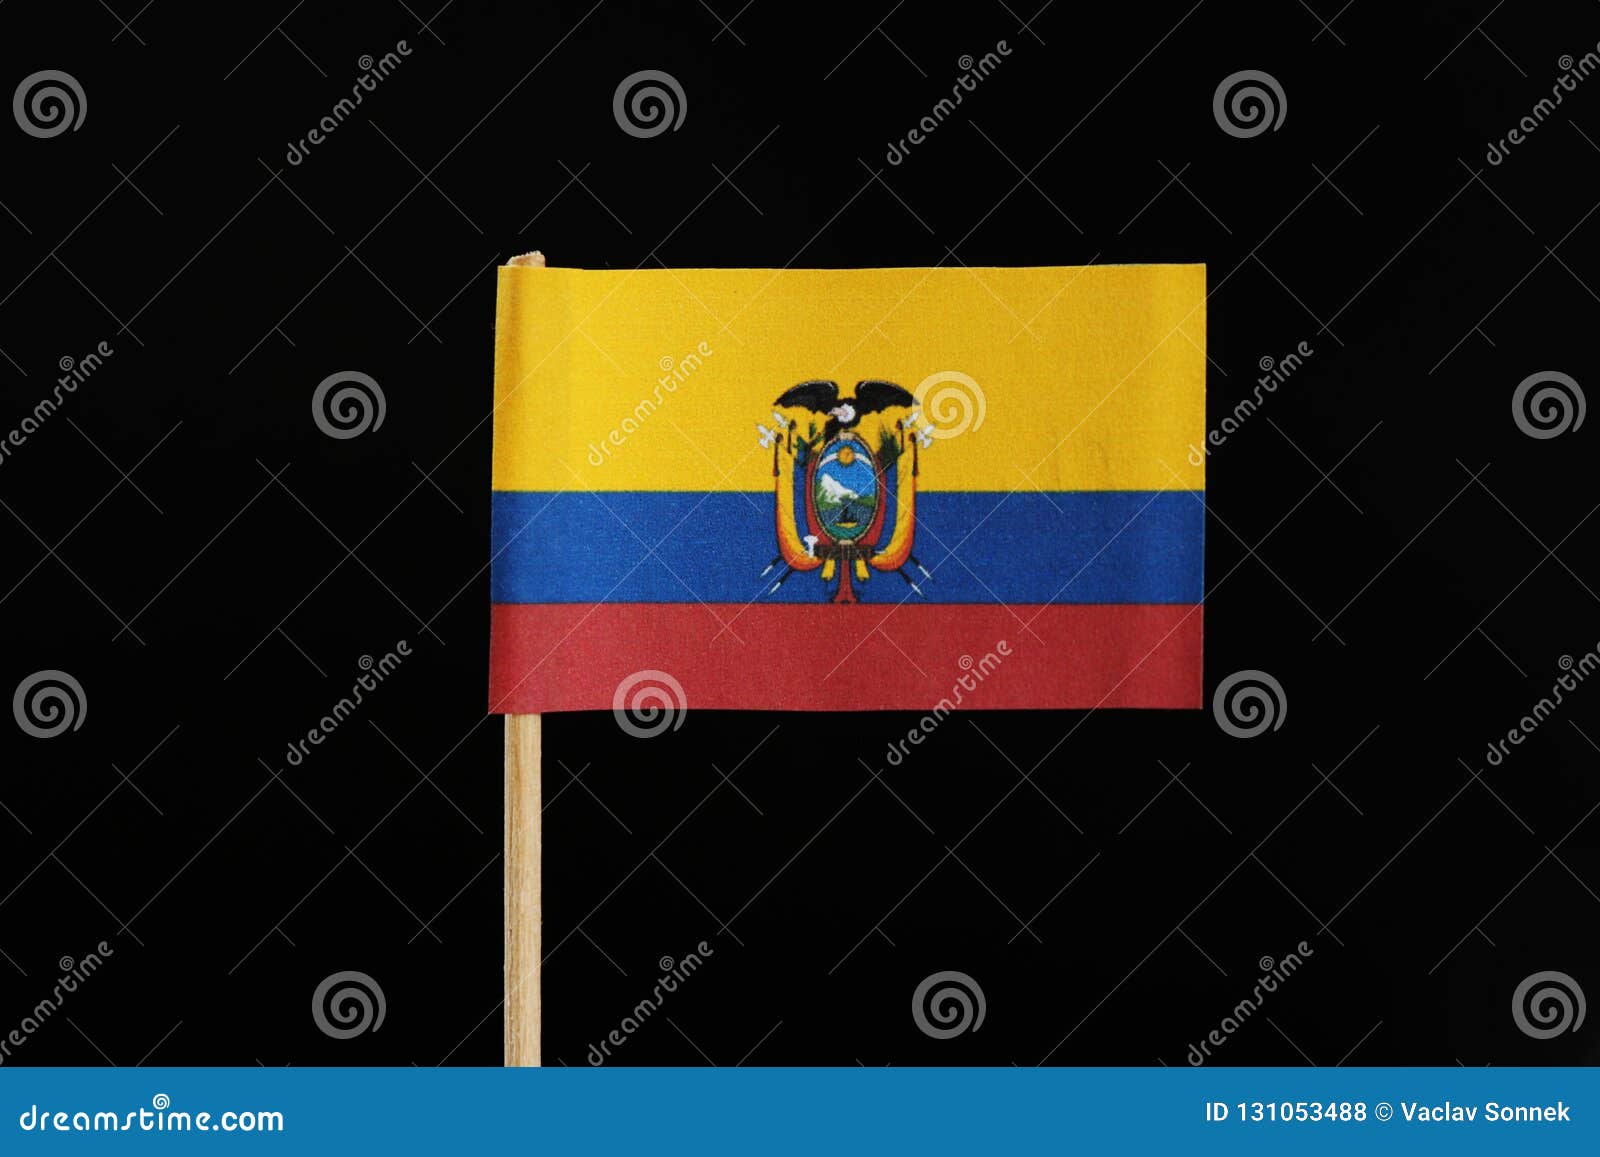 Mislukking innovatie bestellen Een Nationale Vlag Van Ecuador Op Tandenstoker Op Zwarte Achtergrond Een  Horizontale Tricolor Van Geel, Blauw En Rood Met De Nati Stock Foto - Image  of amerika, burgerlijk: 131053488